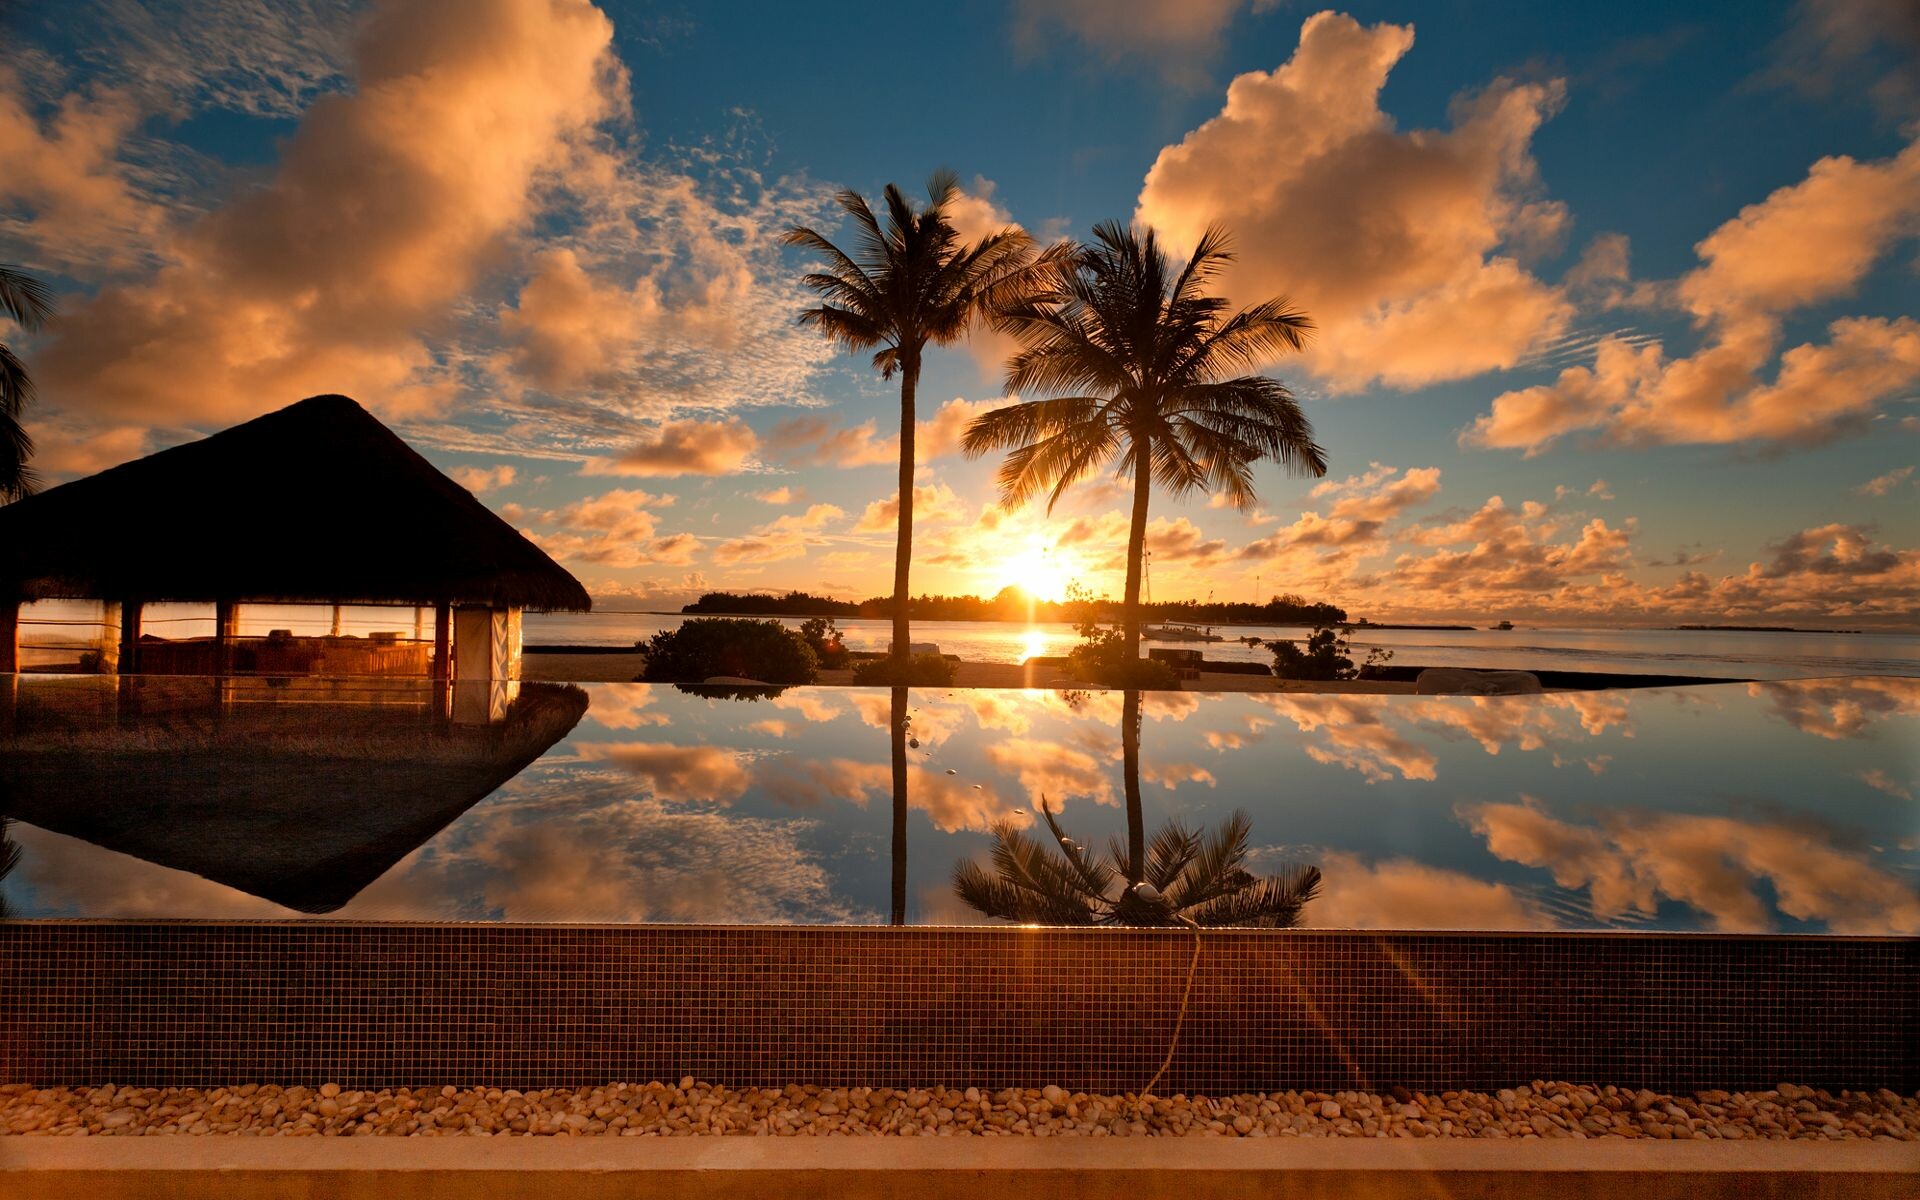 Desktop Wallpaper Sunset Beach Landscape, Hd Image, Picture, Background,  Quazrn